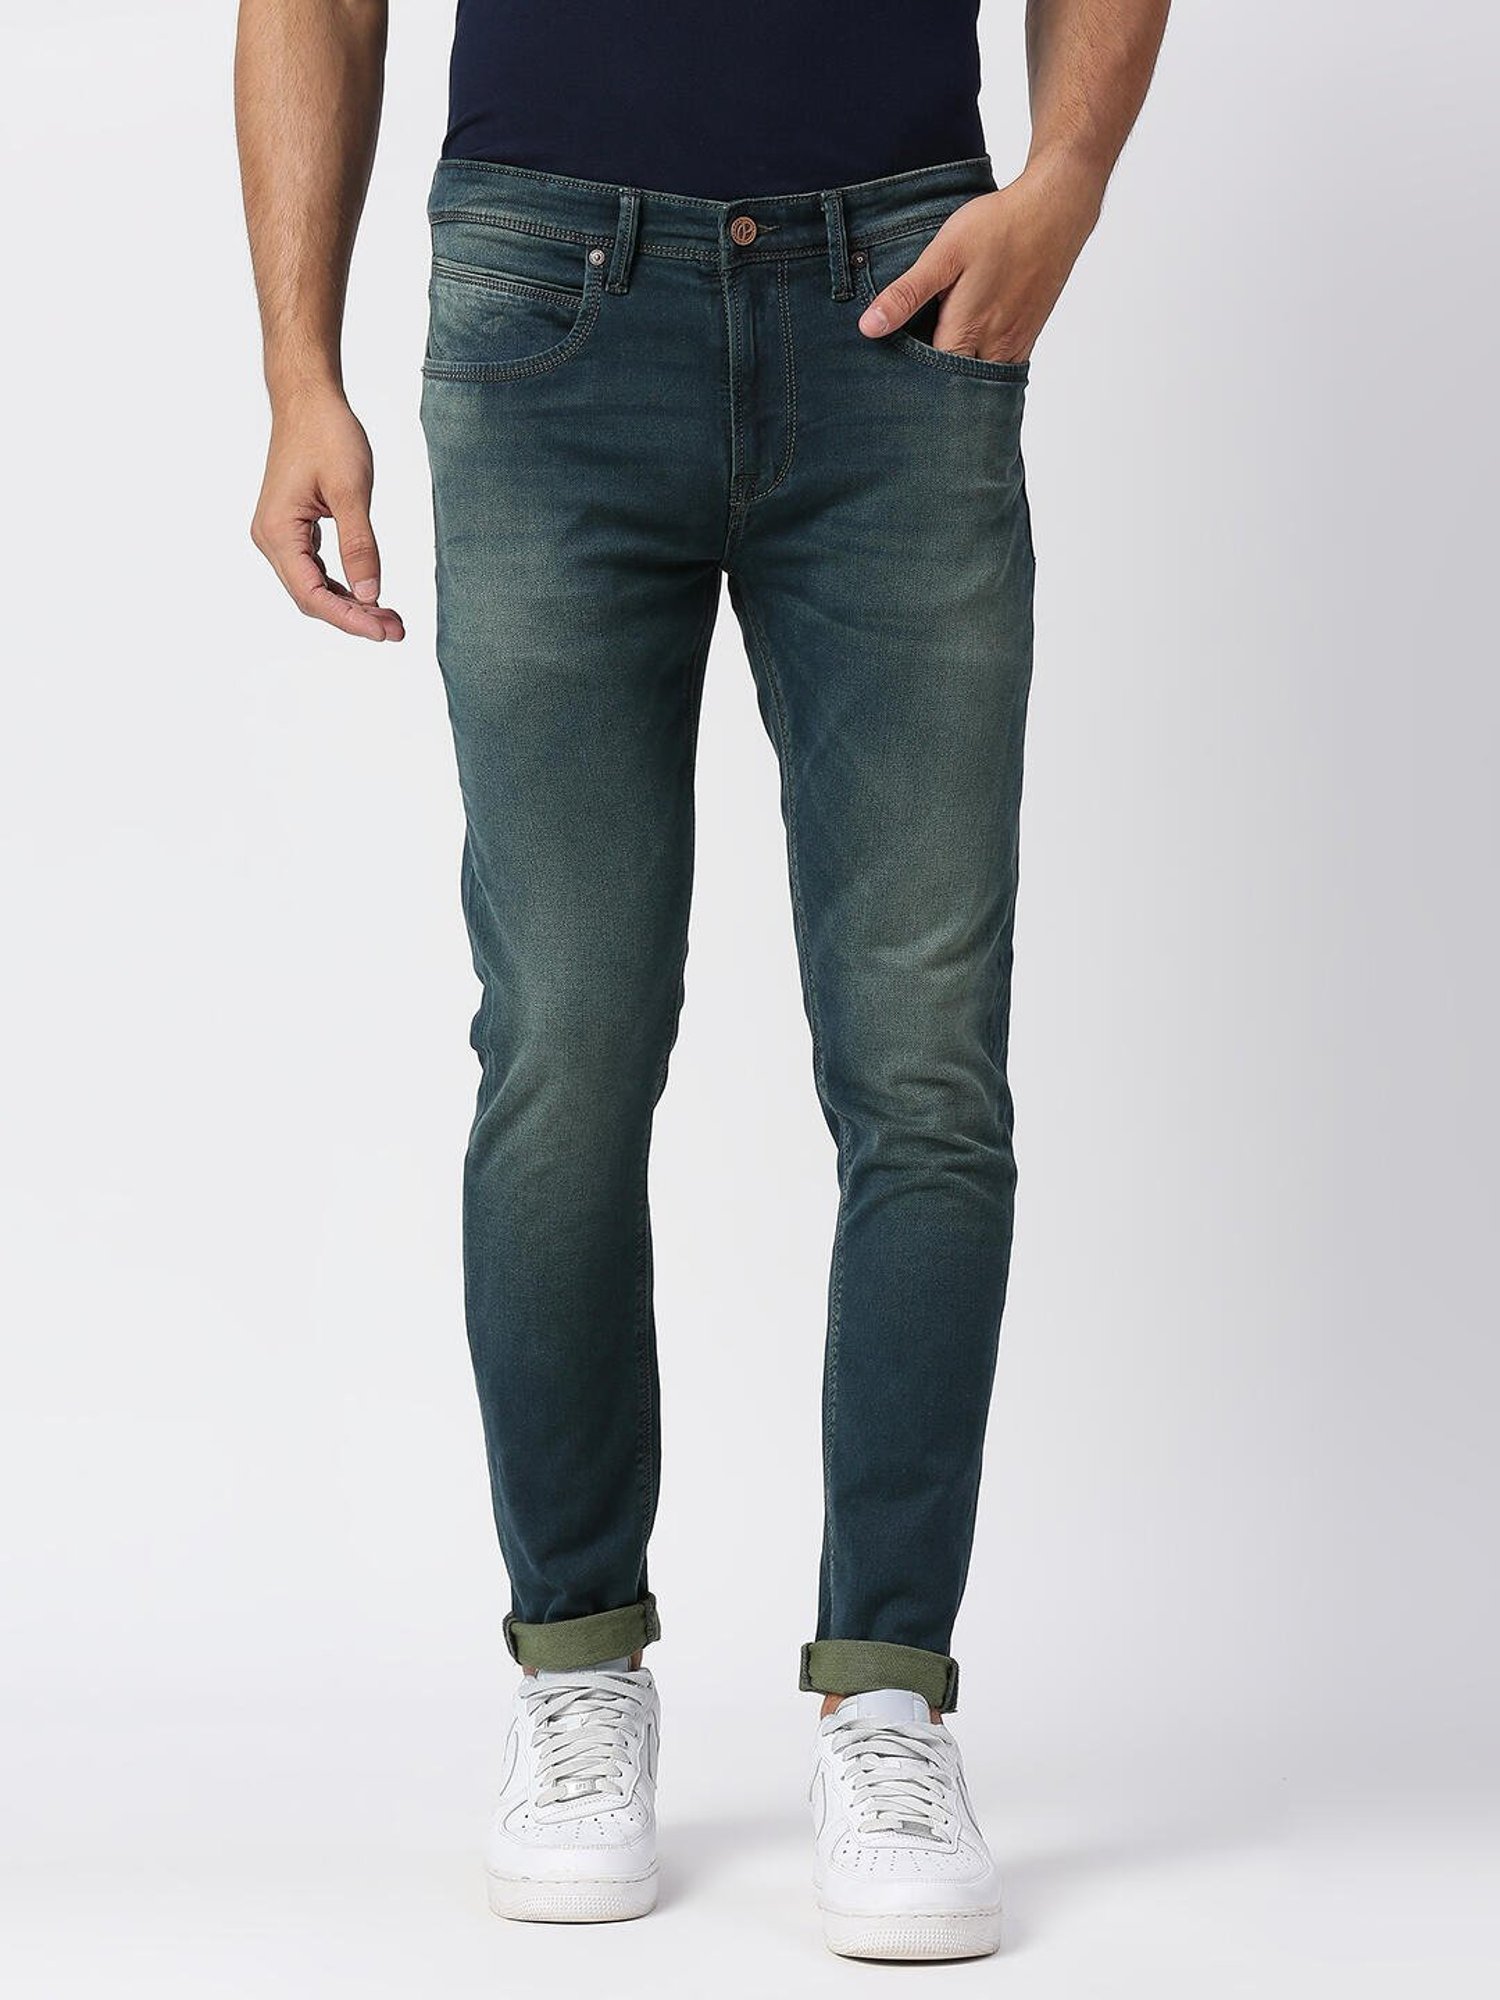 Men's Slim Greene Jeans - Mott & Bow